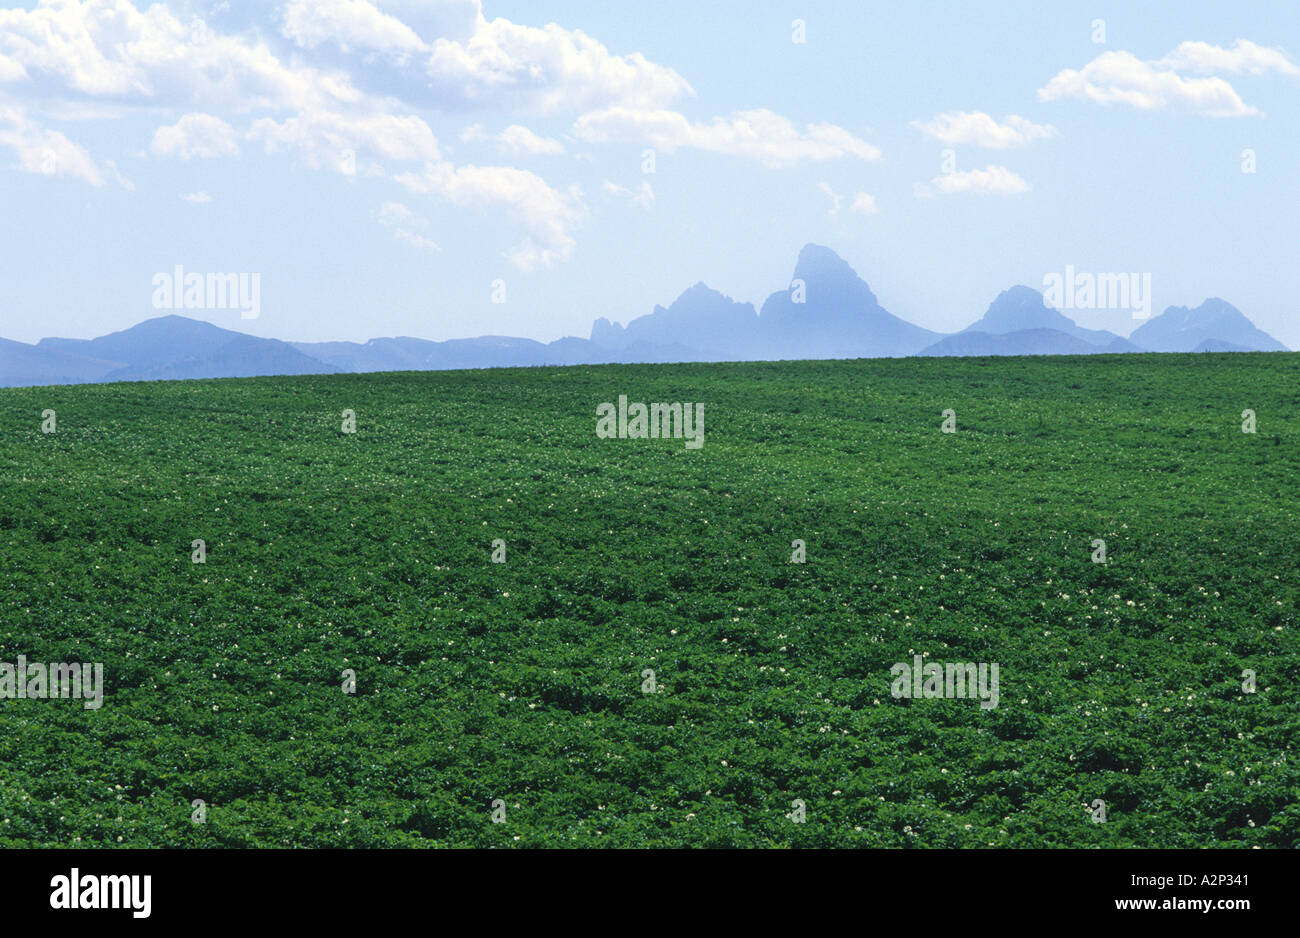 Idaho potato fields near the Teton Mountains  Stock Photo